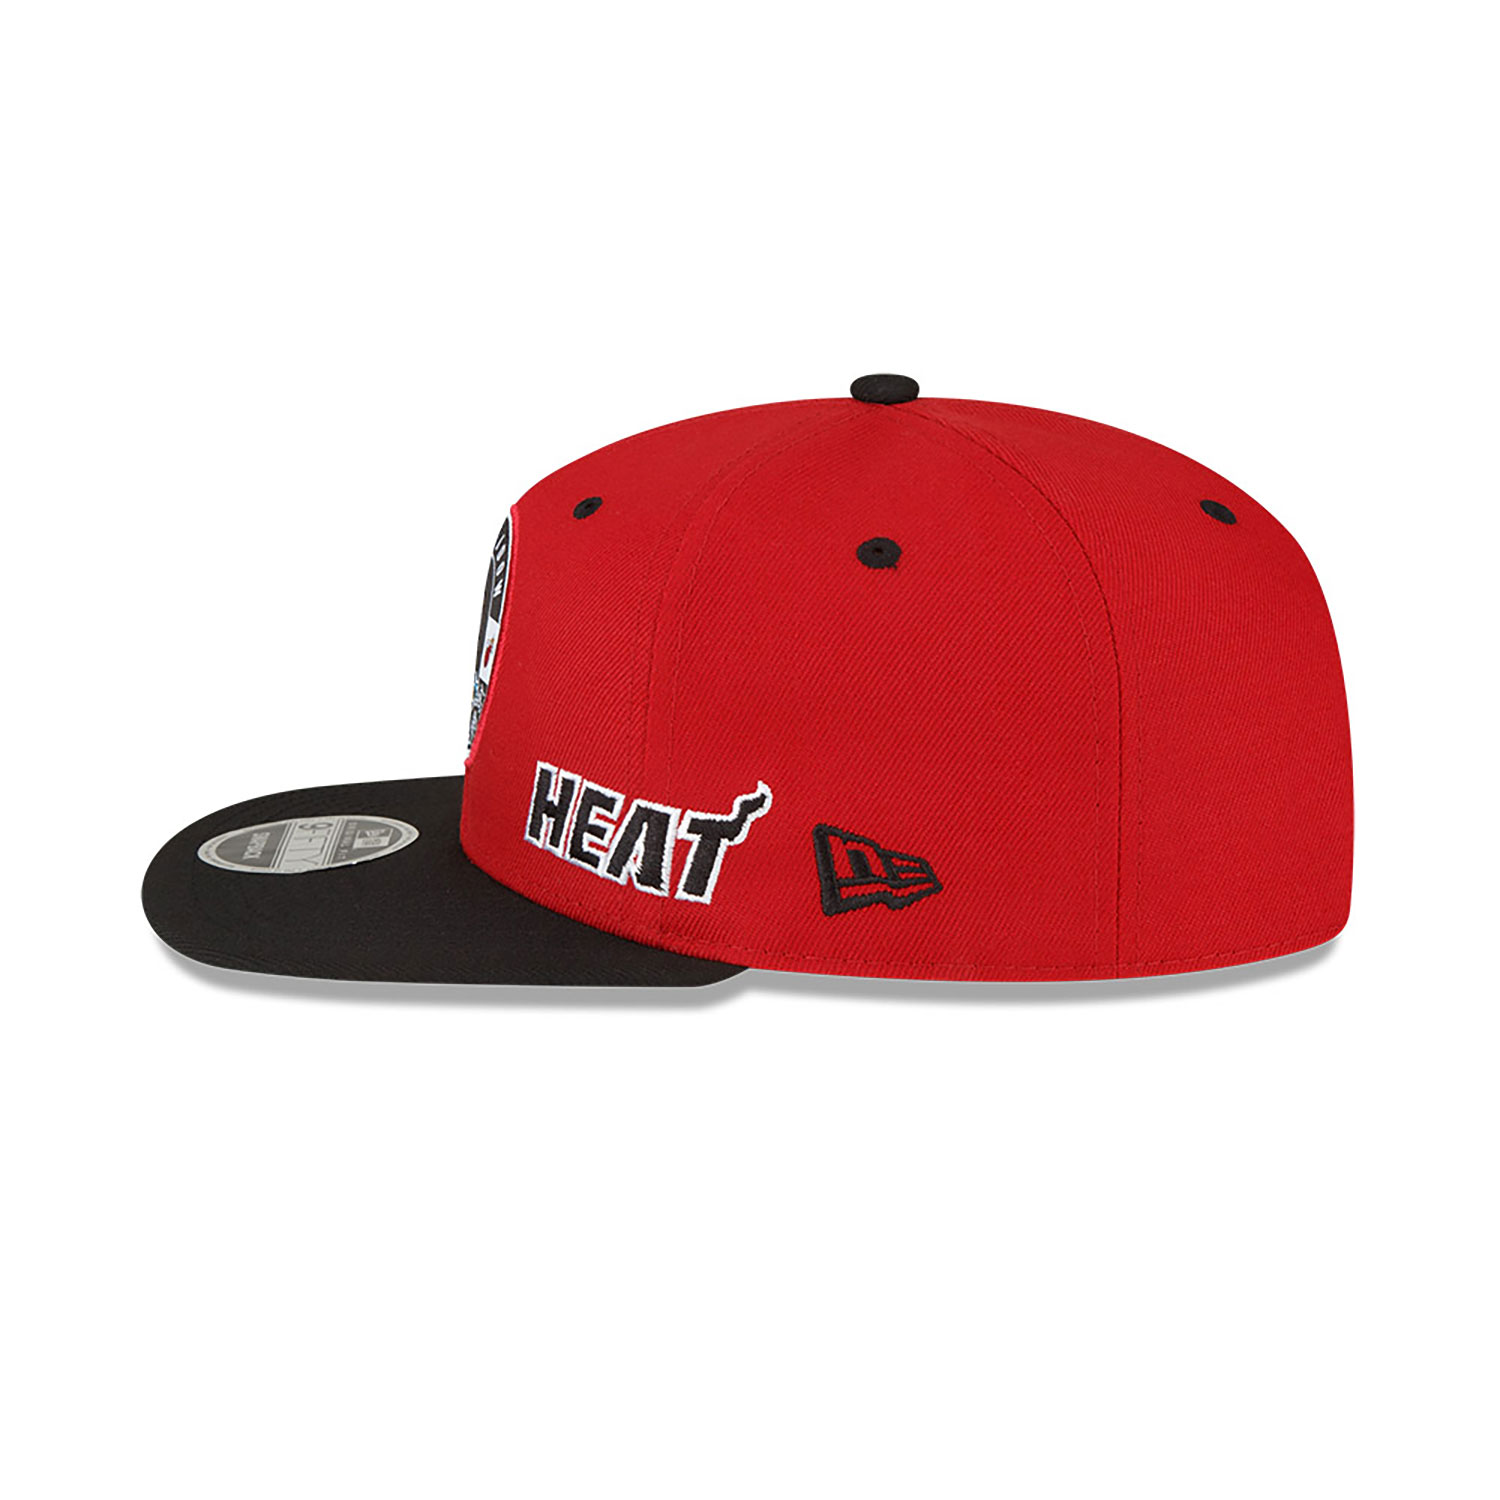 Miami Heat NBA x Marvel Black Widow Red 9FIFTY Snapback Cap